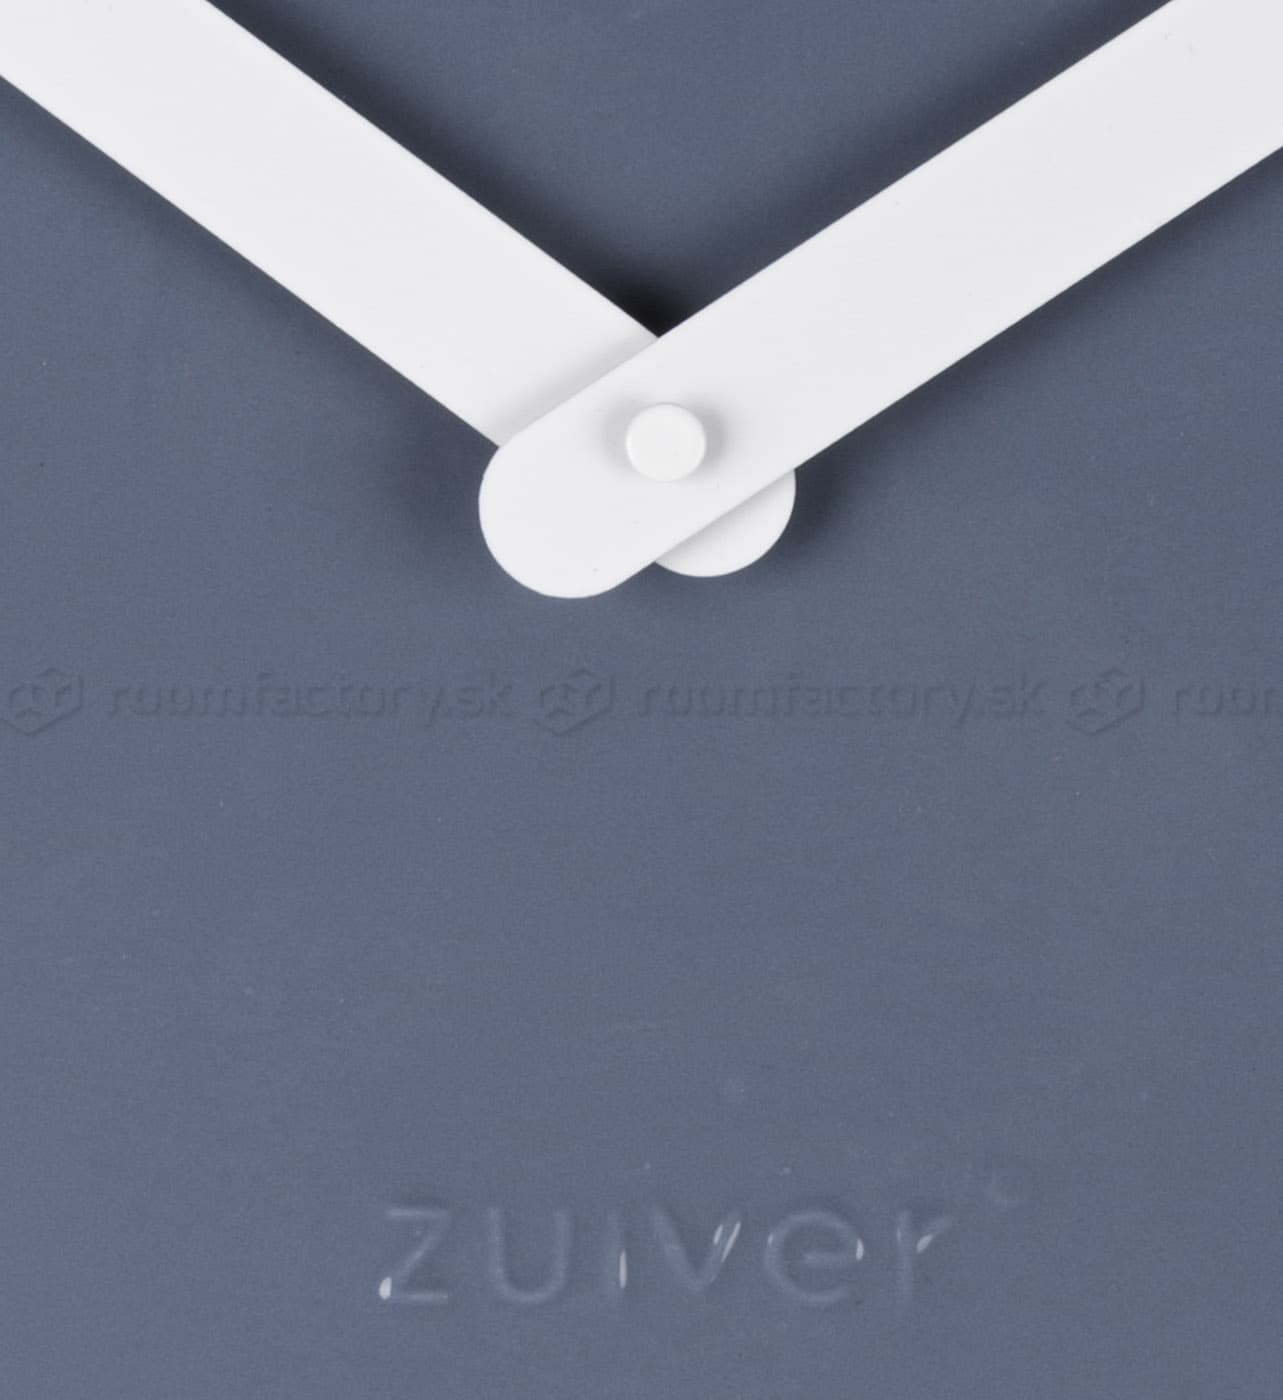 Zuiver Ceramic dizajnové hodiny